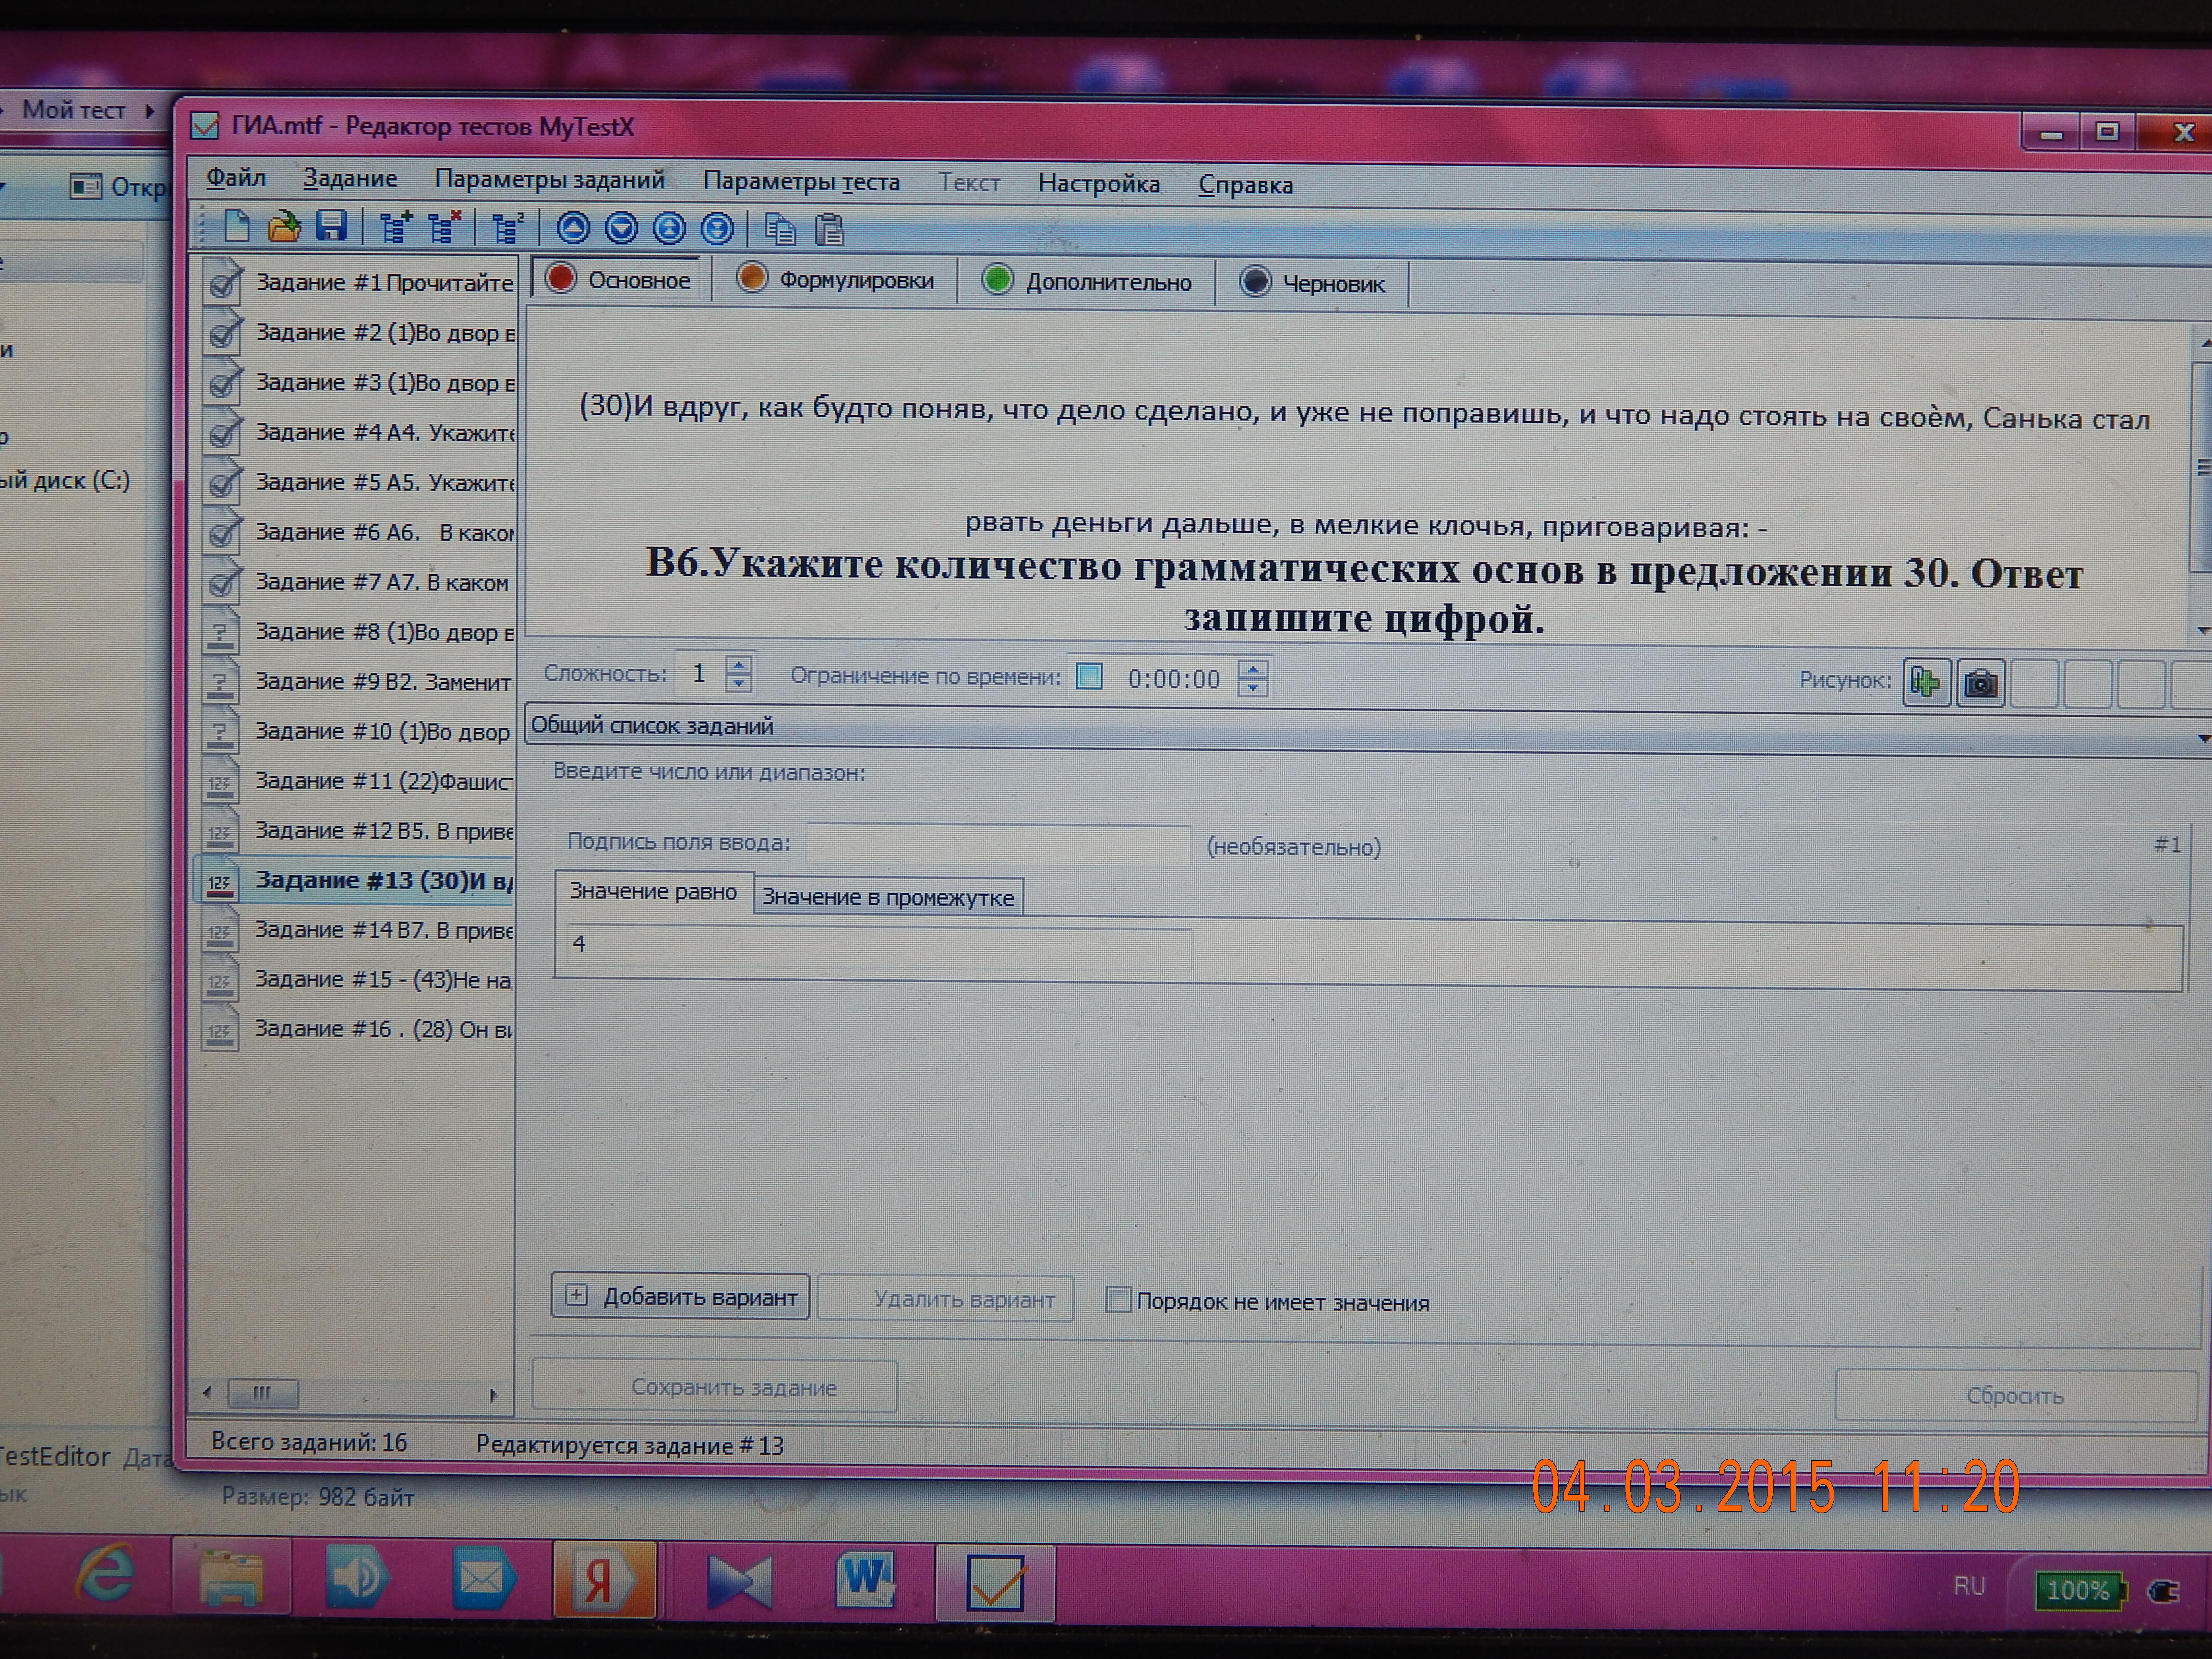 Создание тестов по русскому языку в программе My test X